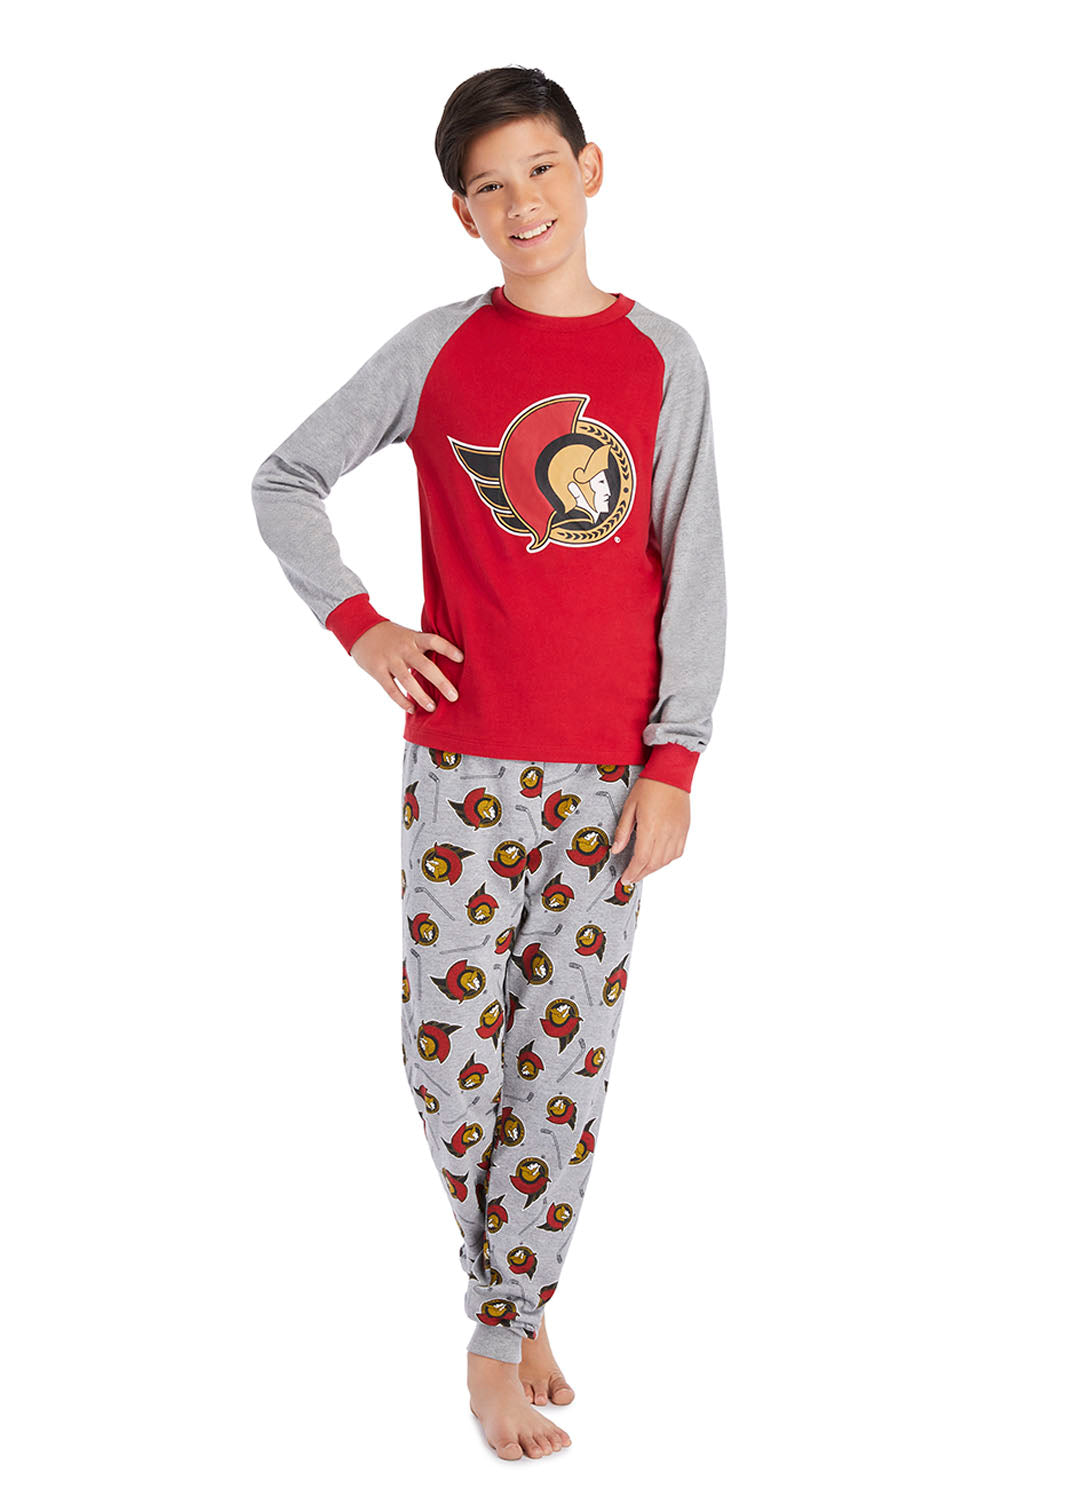 Boy wearing Ottawa Senators Pajama Set